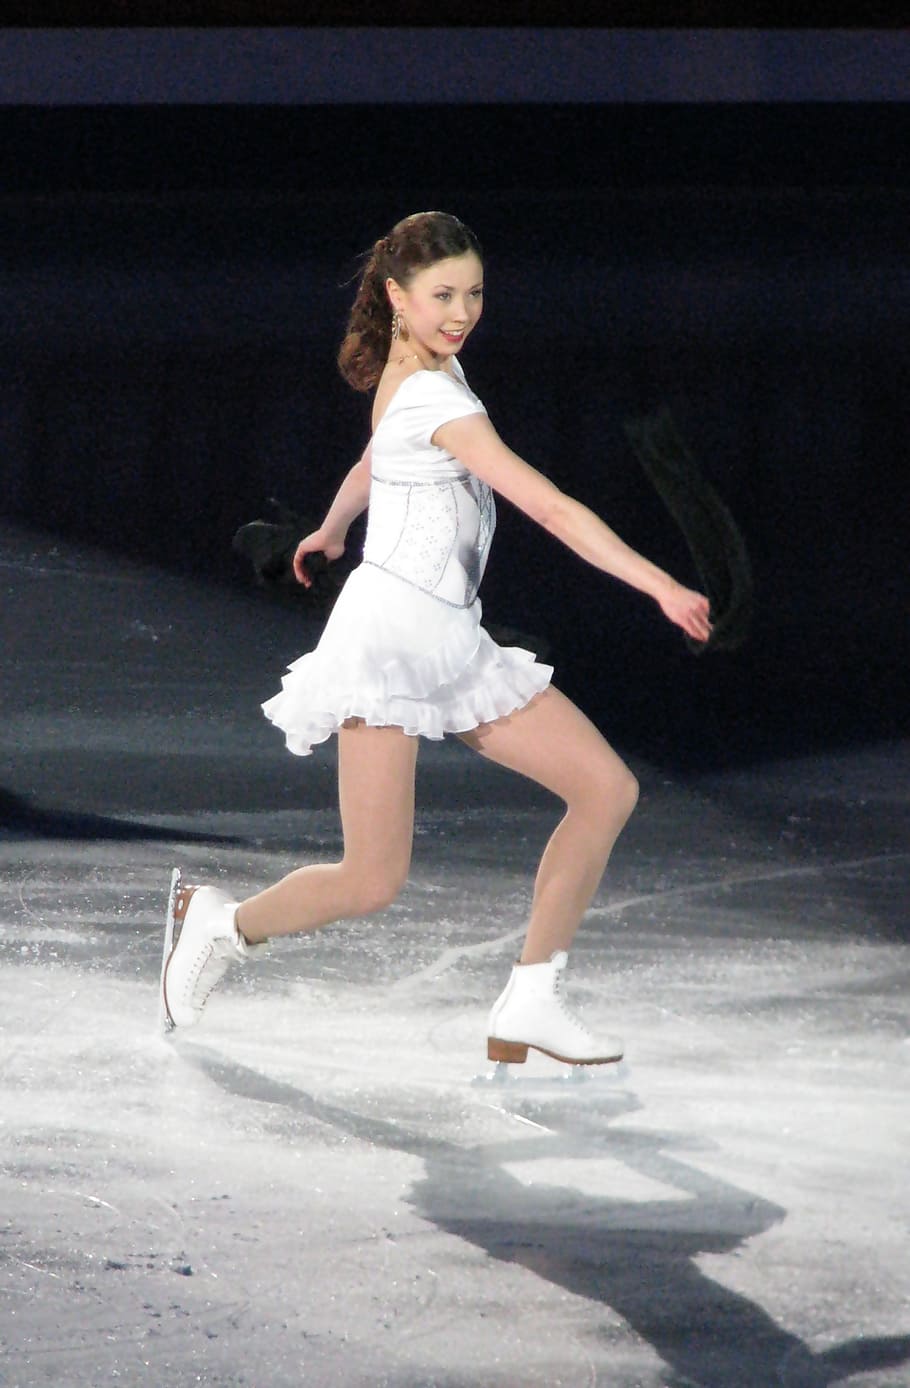 White ice skates for figure skating  Custom Wallpaper